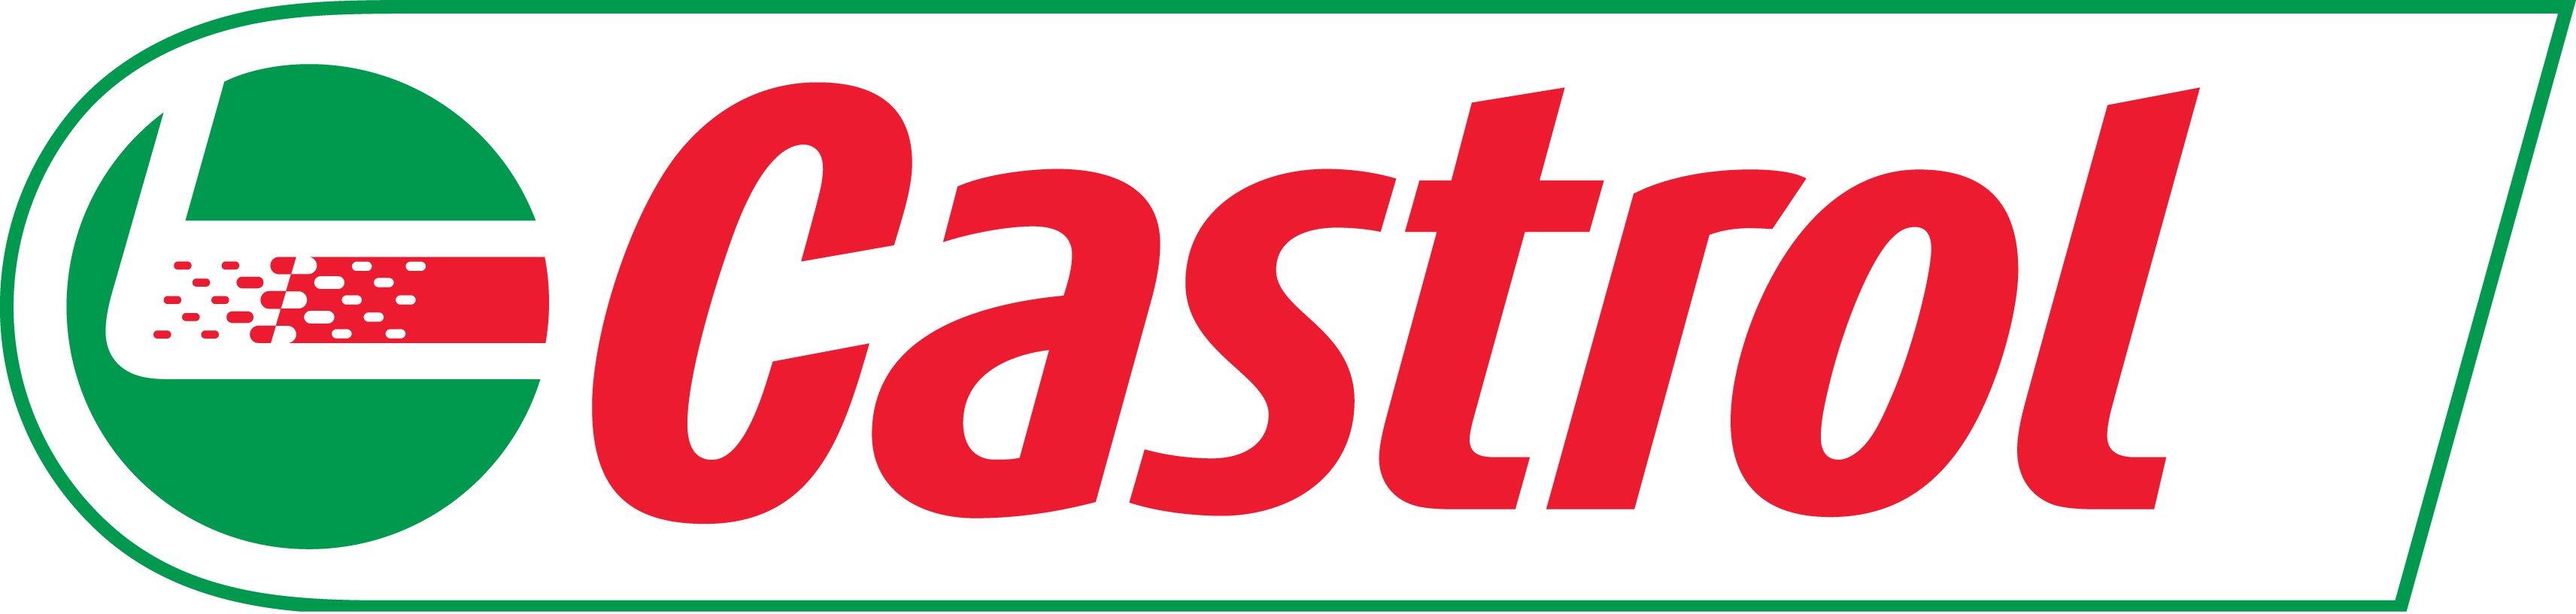 Castrol Logo Wallpaper